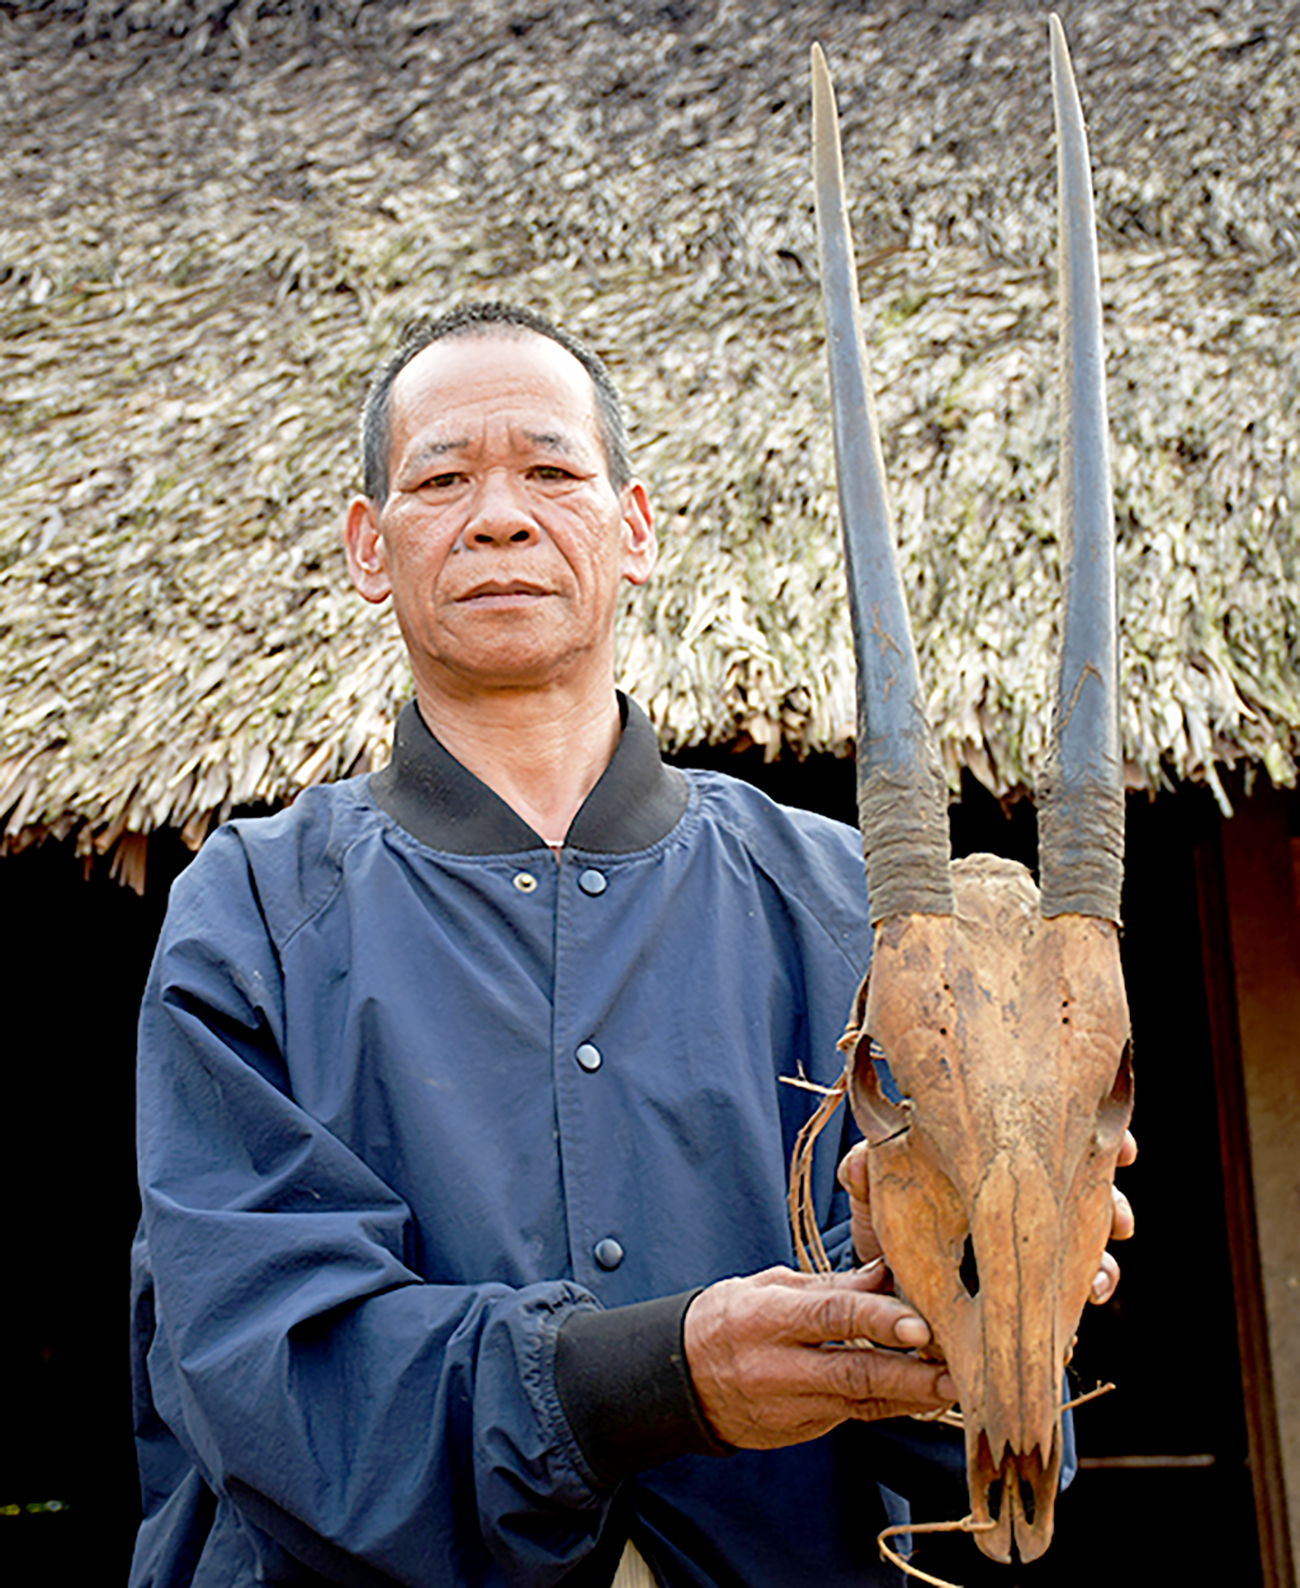 Người dân thôn Aur, xã A Vương, huyện Tây Giang, lưu giữ sừng và đầu một con sao la săn bắt được từ hàng chục năm trước. Ảnh: Khu bảo tồn loài sao la Quảng Nam